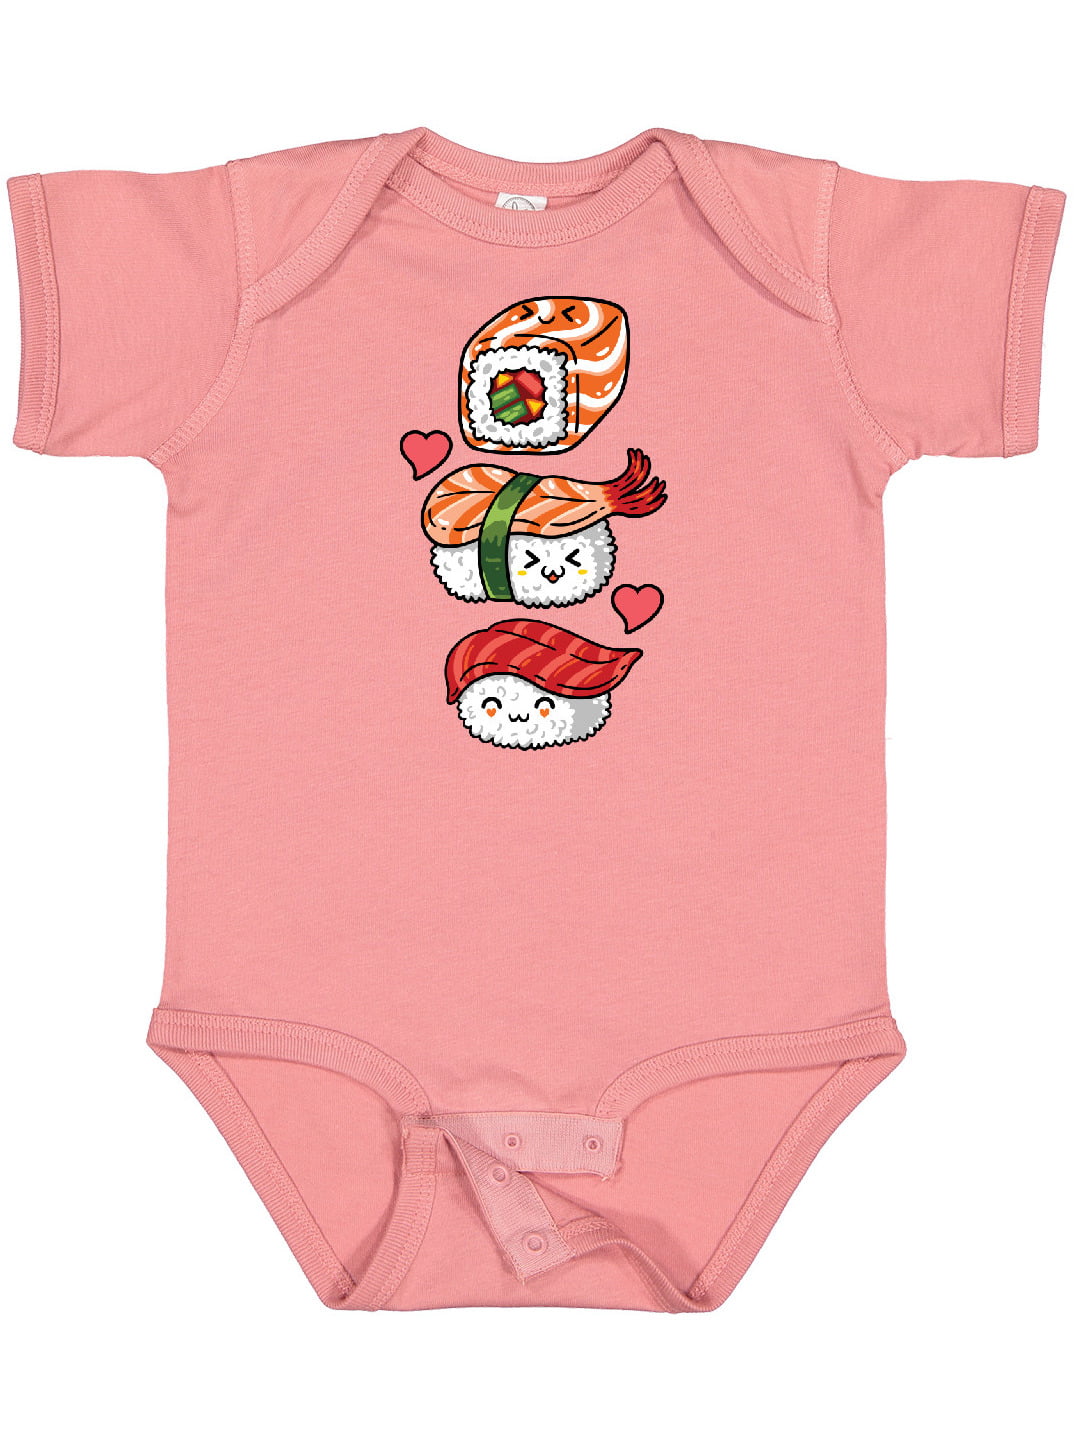 Sloth Loves Sushi Unisex Baby Short-Sleeve Fashion Bodysuit 